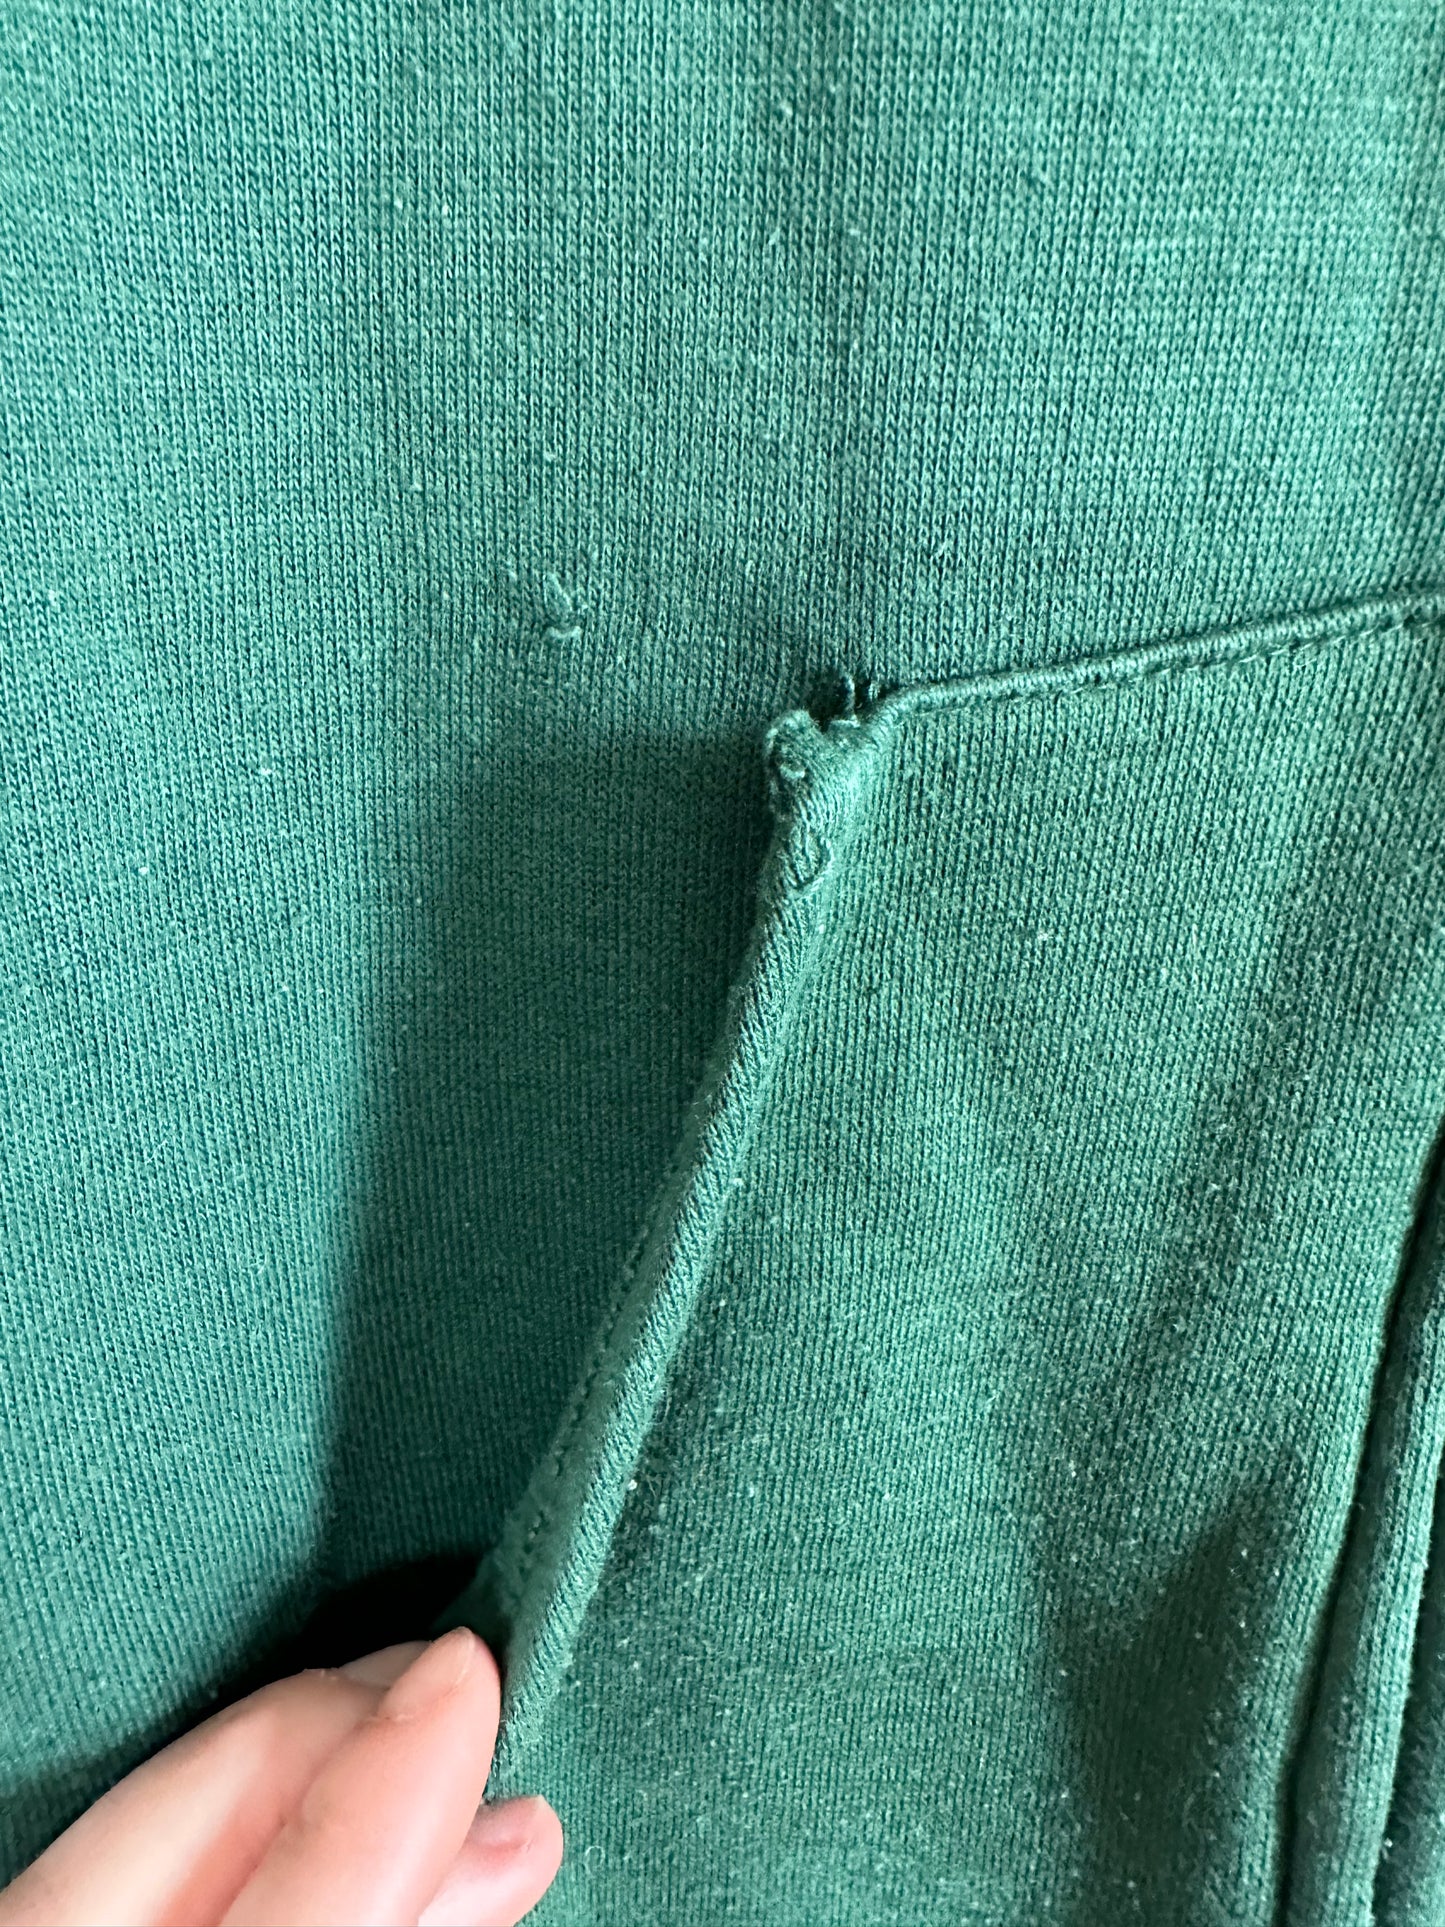 70s Evergreen Zip Front Sweatshirt